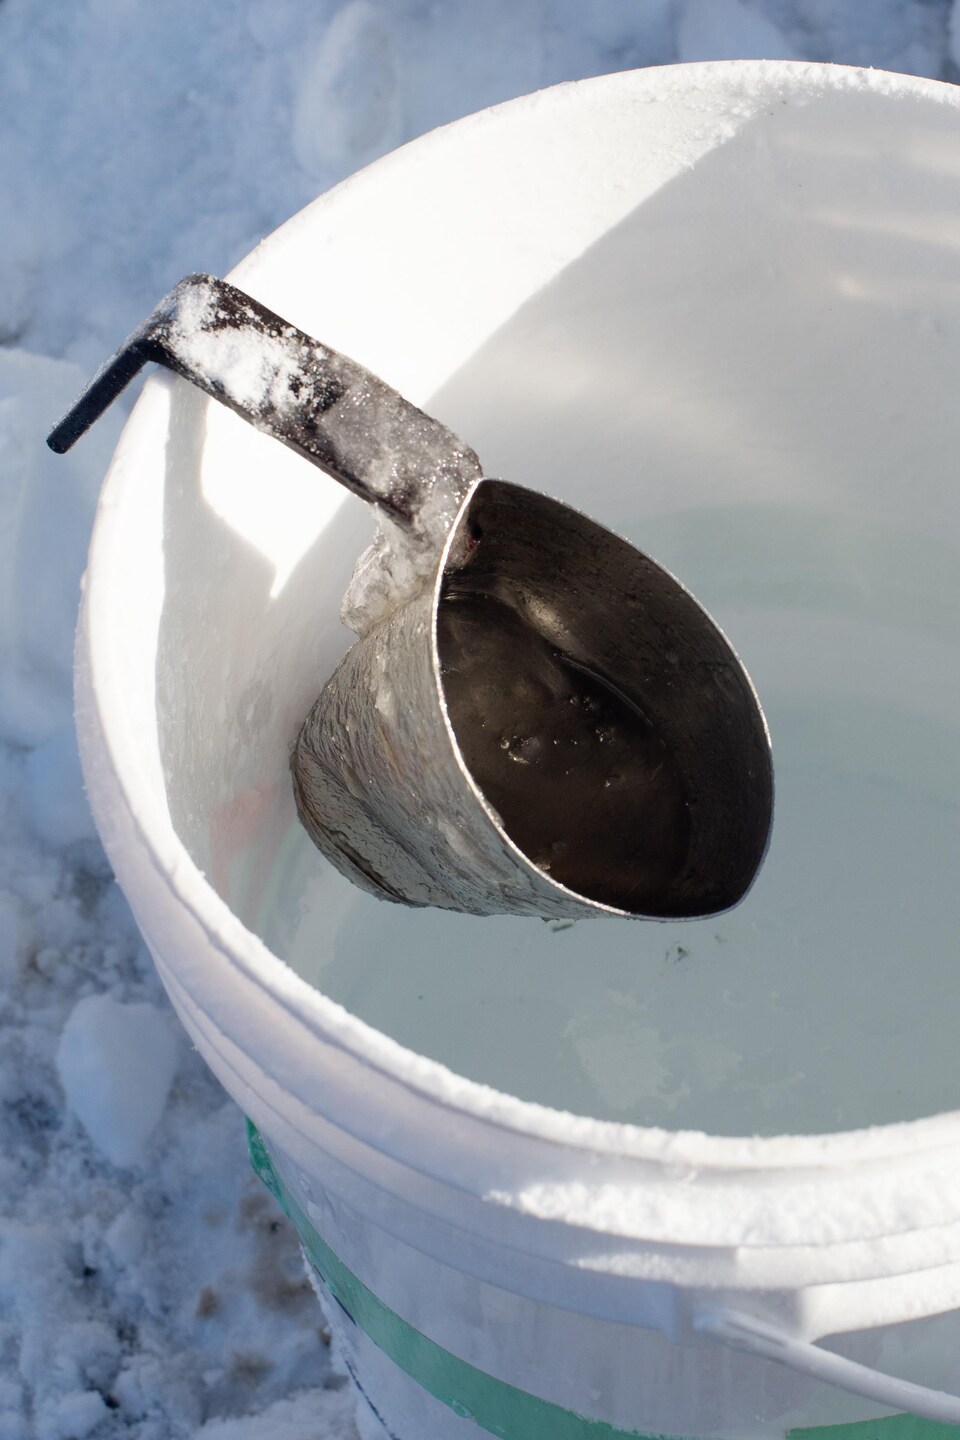 La louche en métal est accrochée sur le bord d'un sceau d'eau, en apparence légèrement glacée.